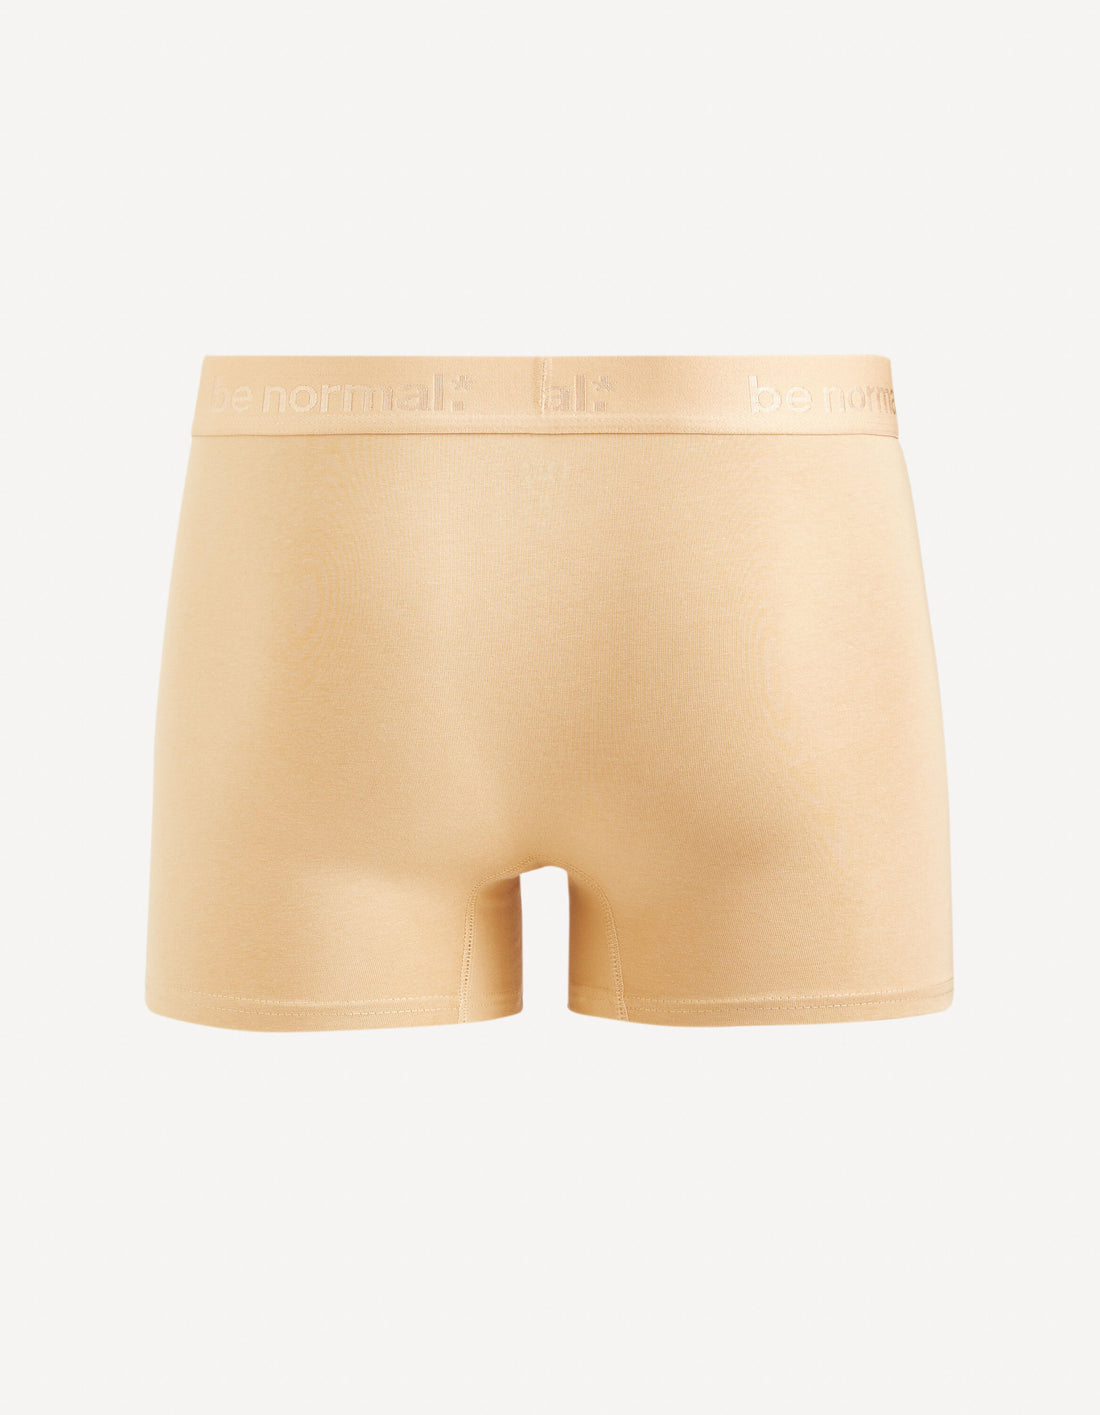 Stretch Cotton Boxer Shorts - Beige_BINORMAL_BEIGE_02